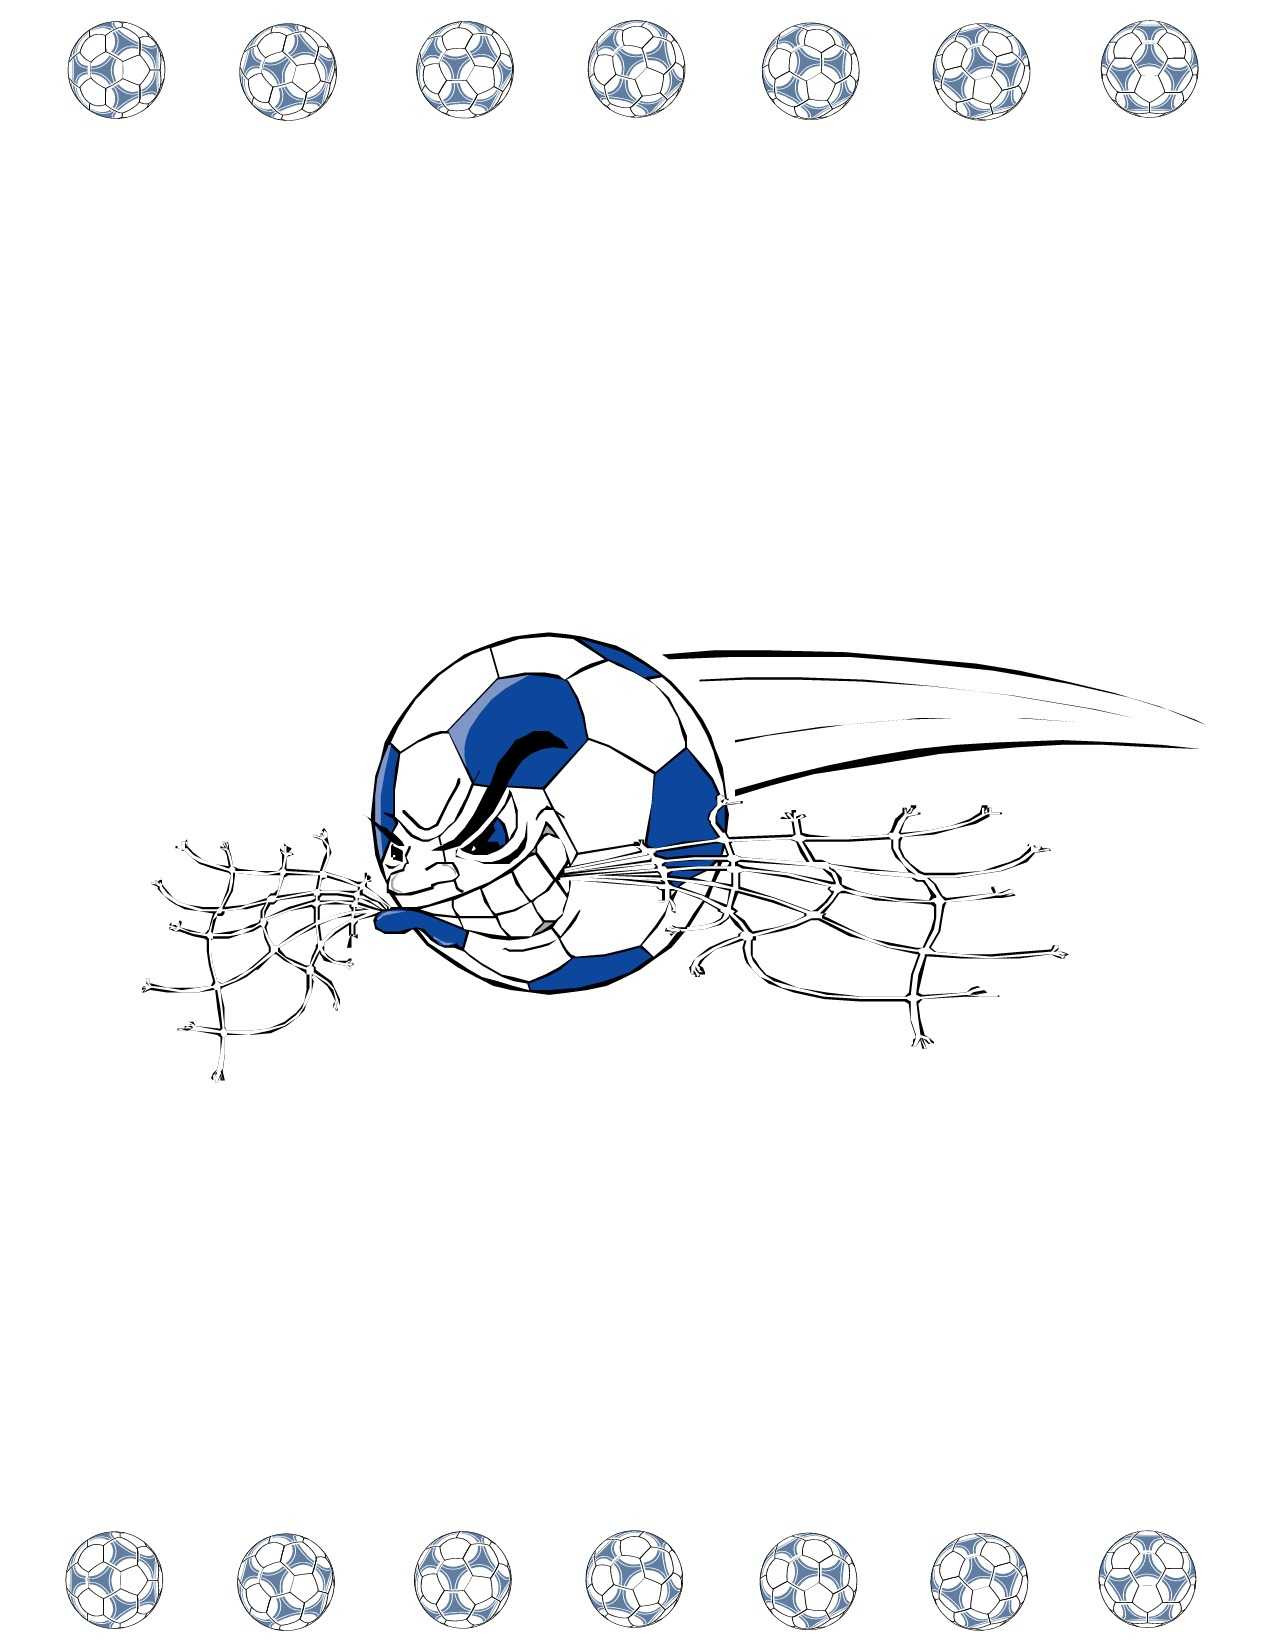 Soccer Award Certificate Maker: Make Personalized Soccer Awards Pertaining To Soccer Certificate Template